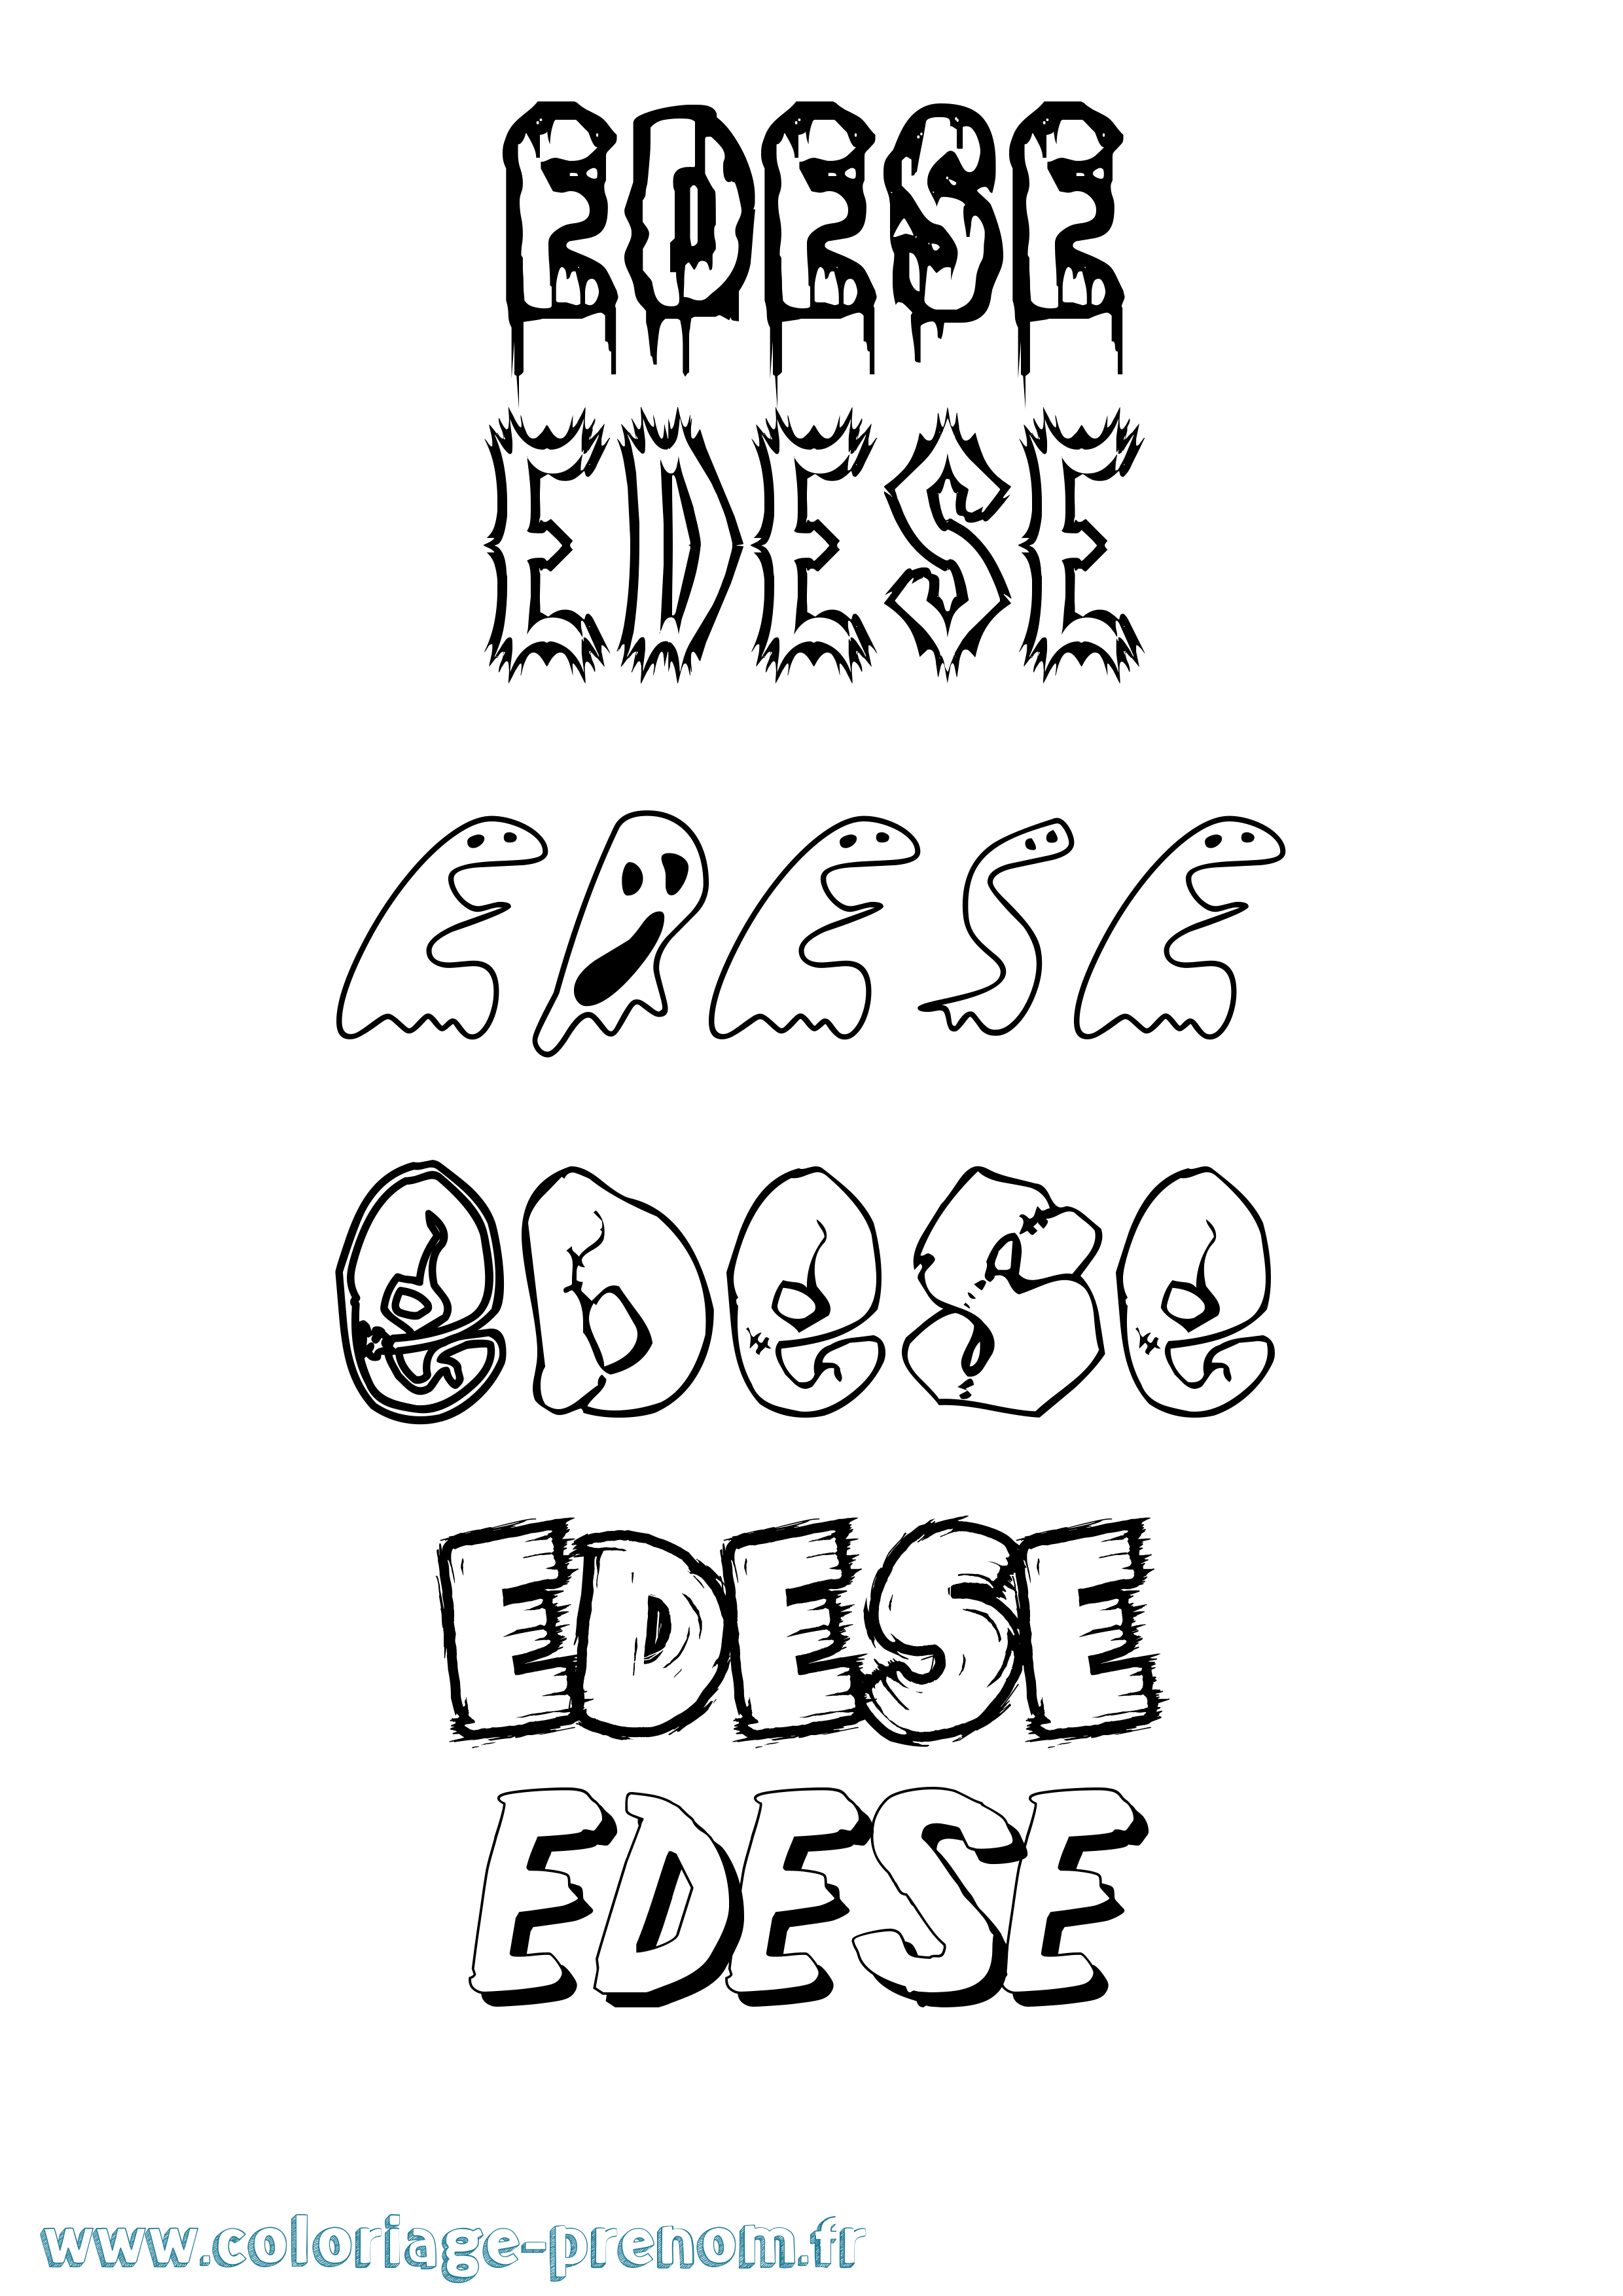 Coloriage prénom Edese Frisson